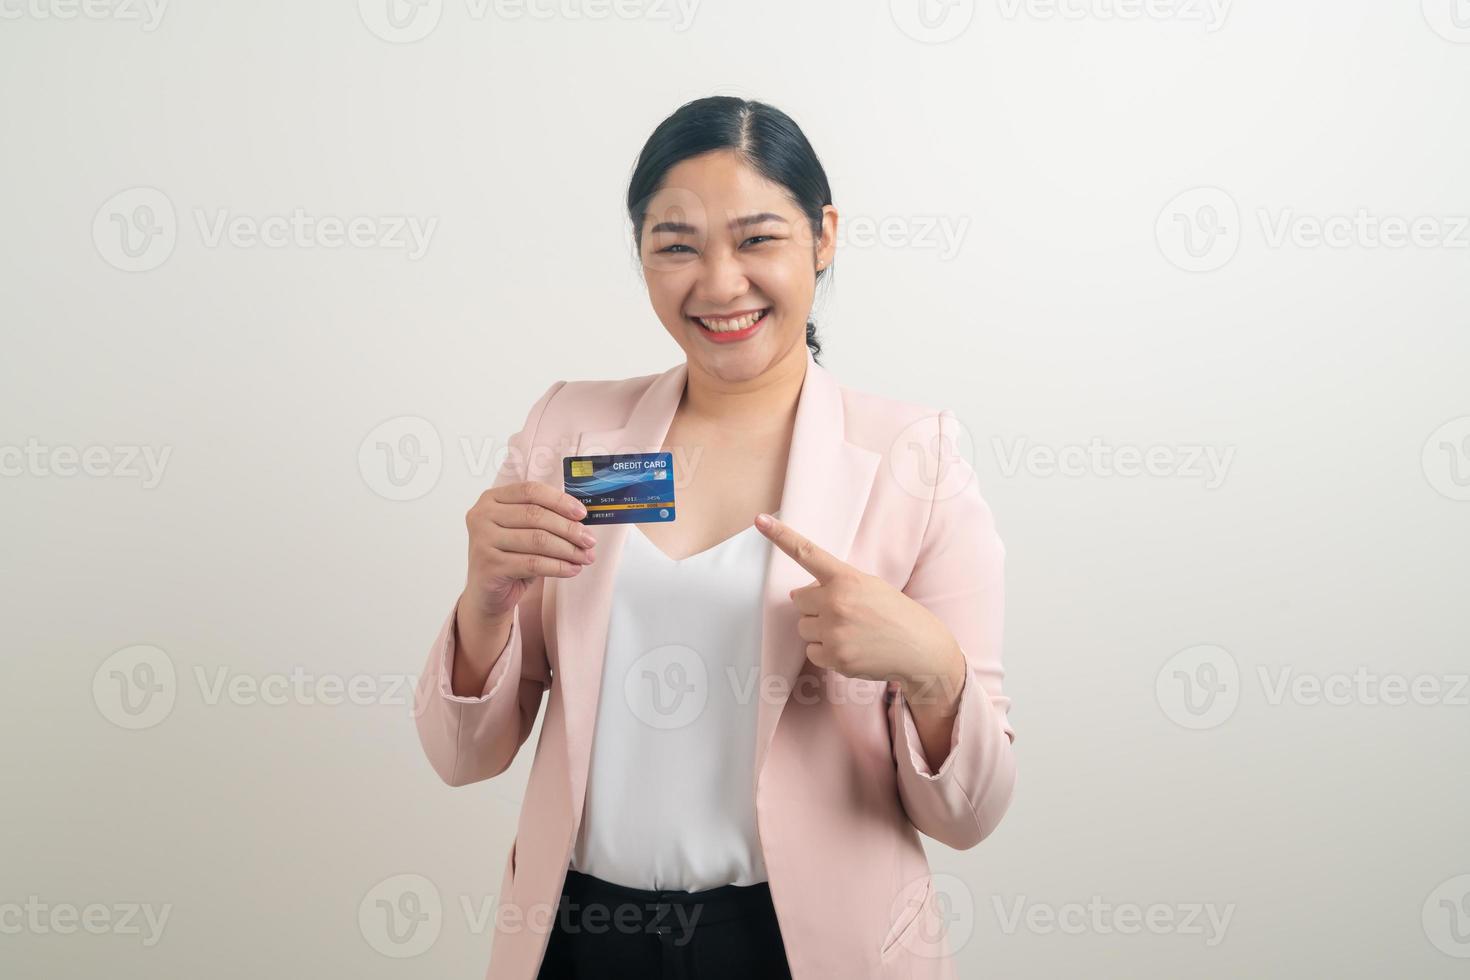 asiatisk kvinna med kreditkort med vit bakgrund foto